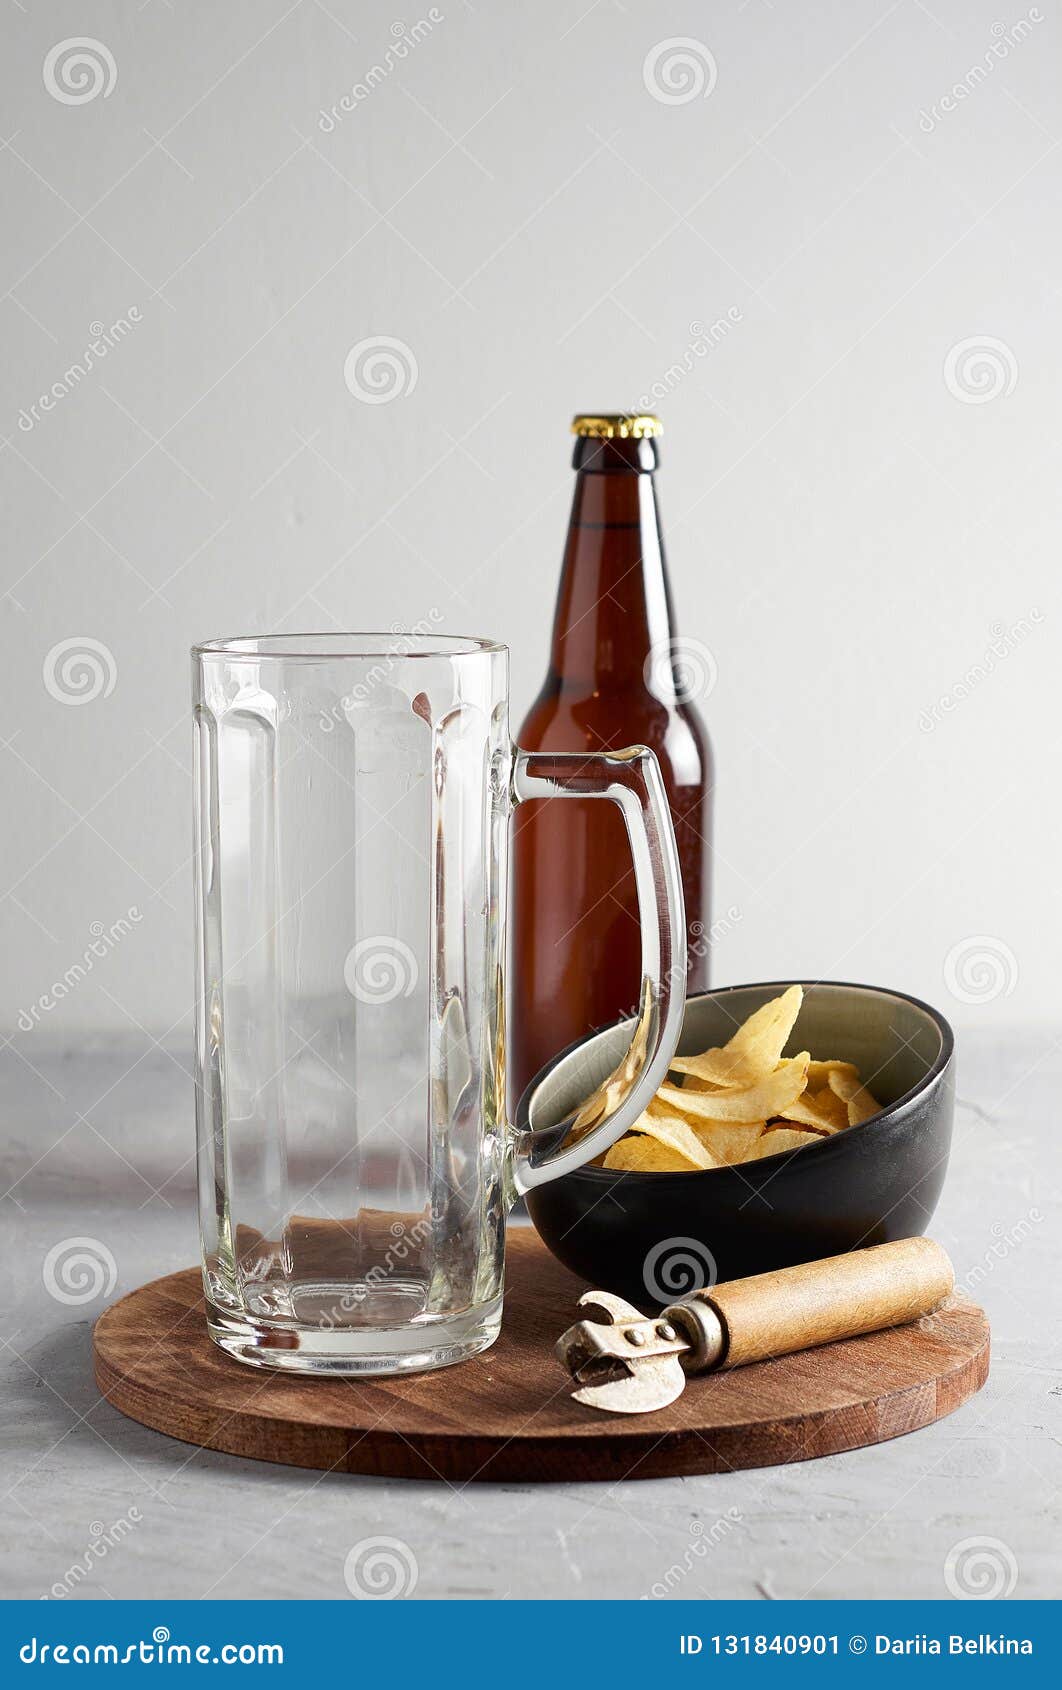 女性用脆薯片将啤酒倒入玻璃上的图像餐饮美食免费下载_jpg格式_4552像素_编号36392713-千图网